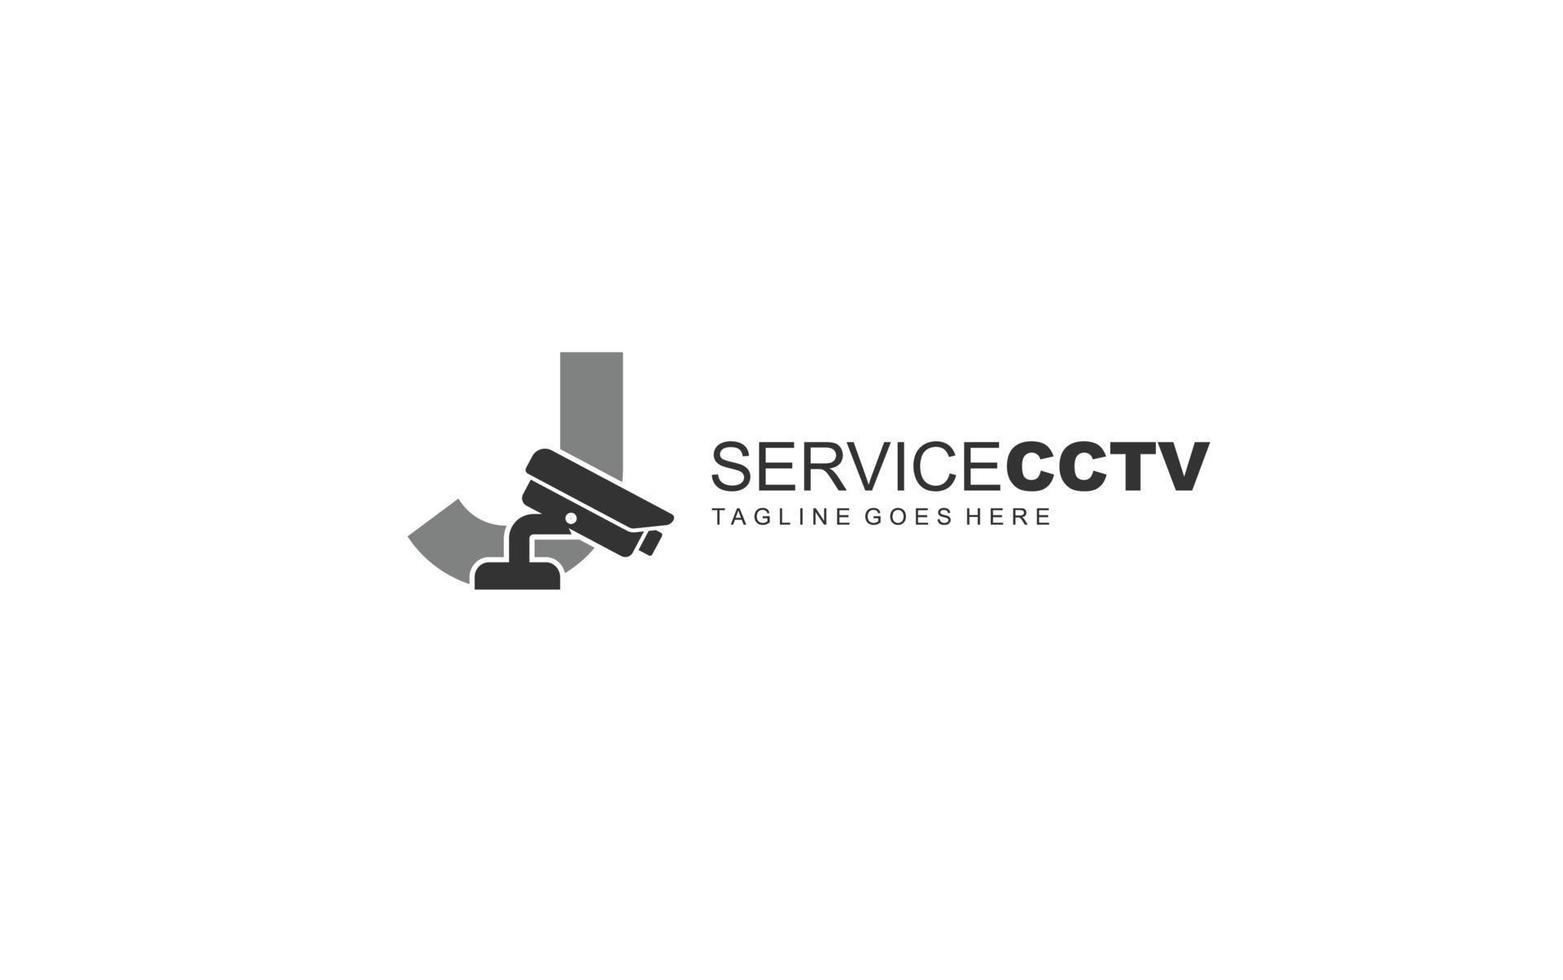 j logo cctv para identidad. ilustración de vector de plantilla de seguridad para su marca.